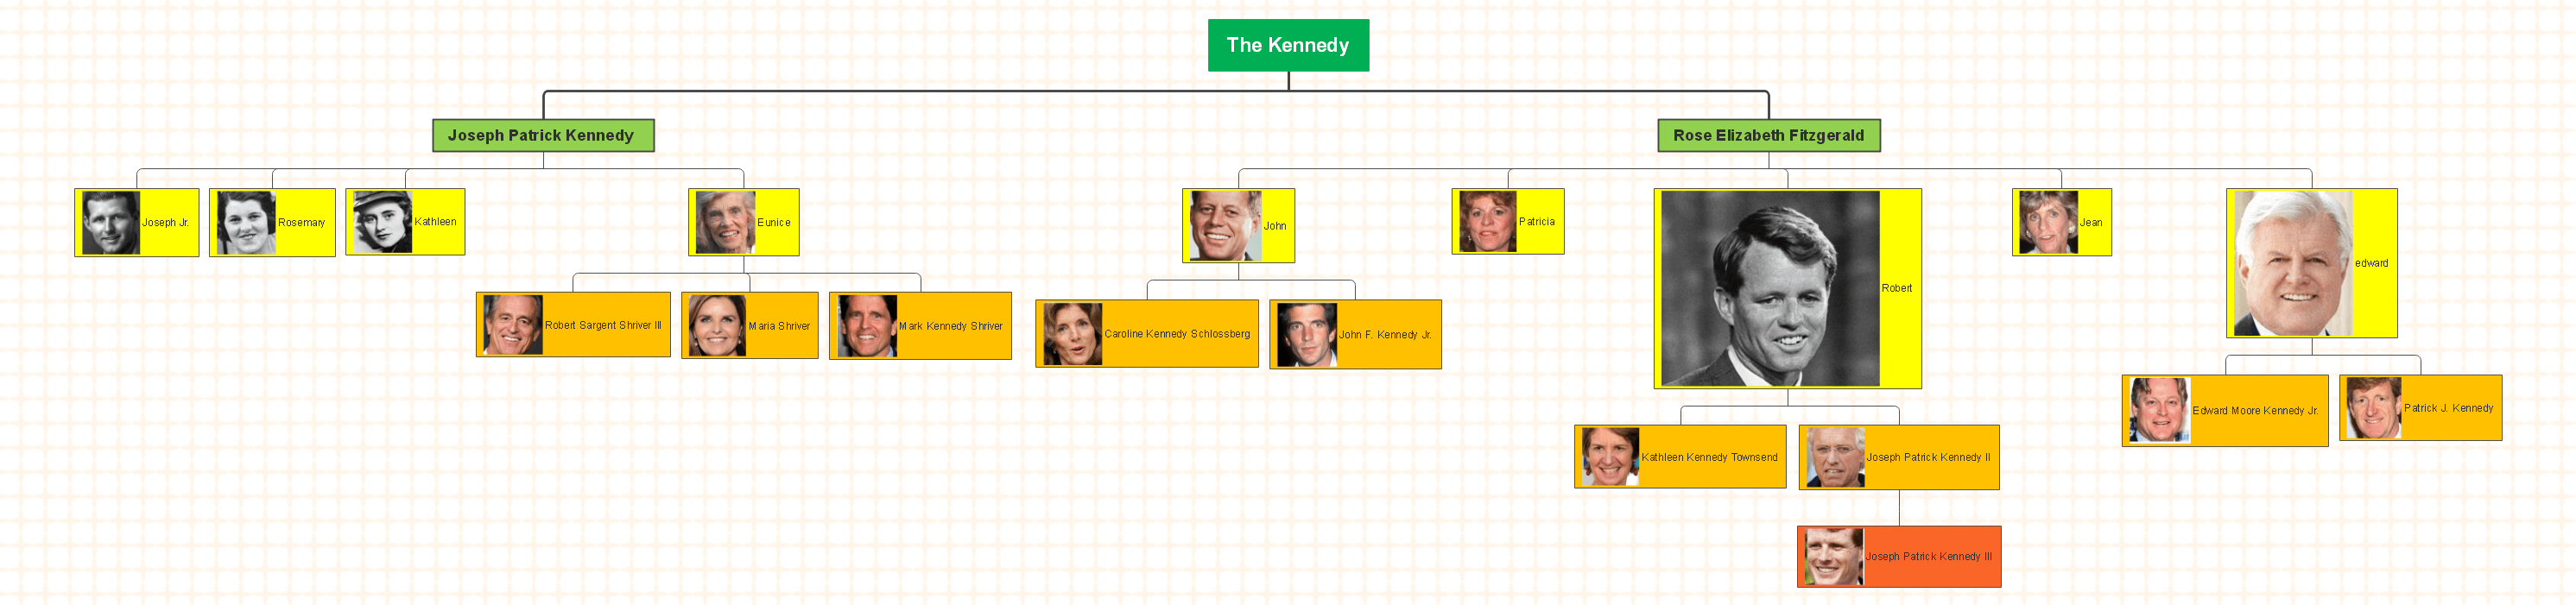 kennedy family tree